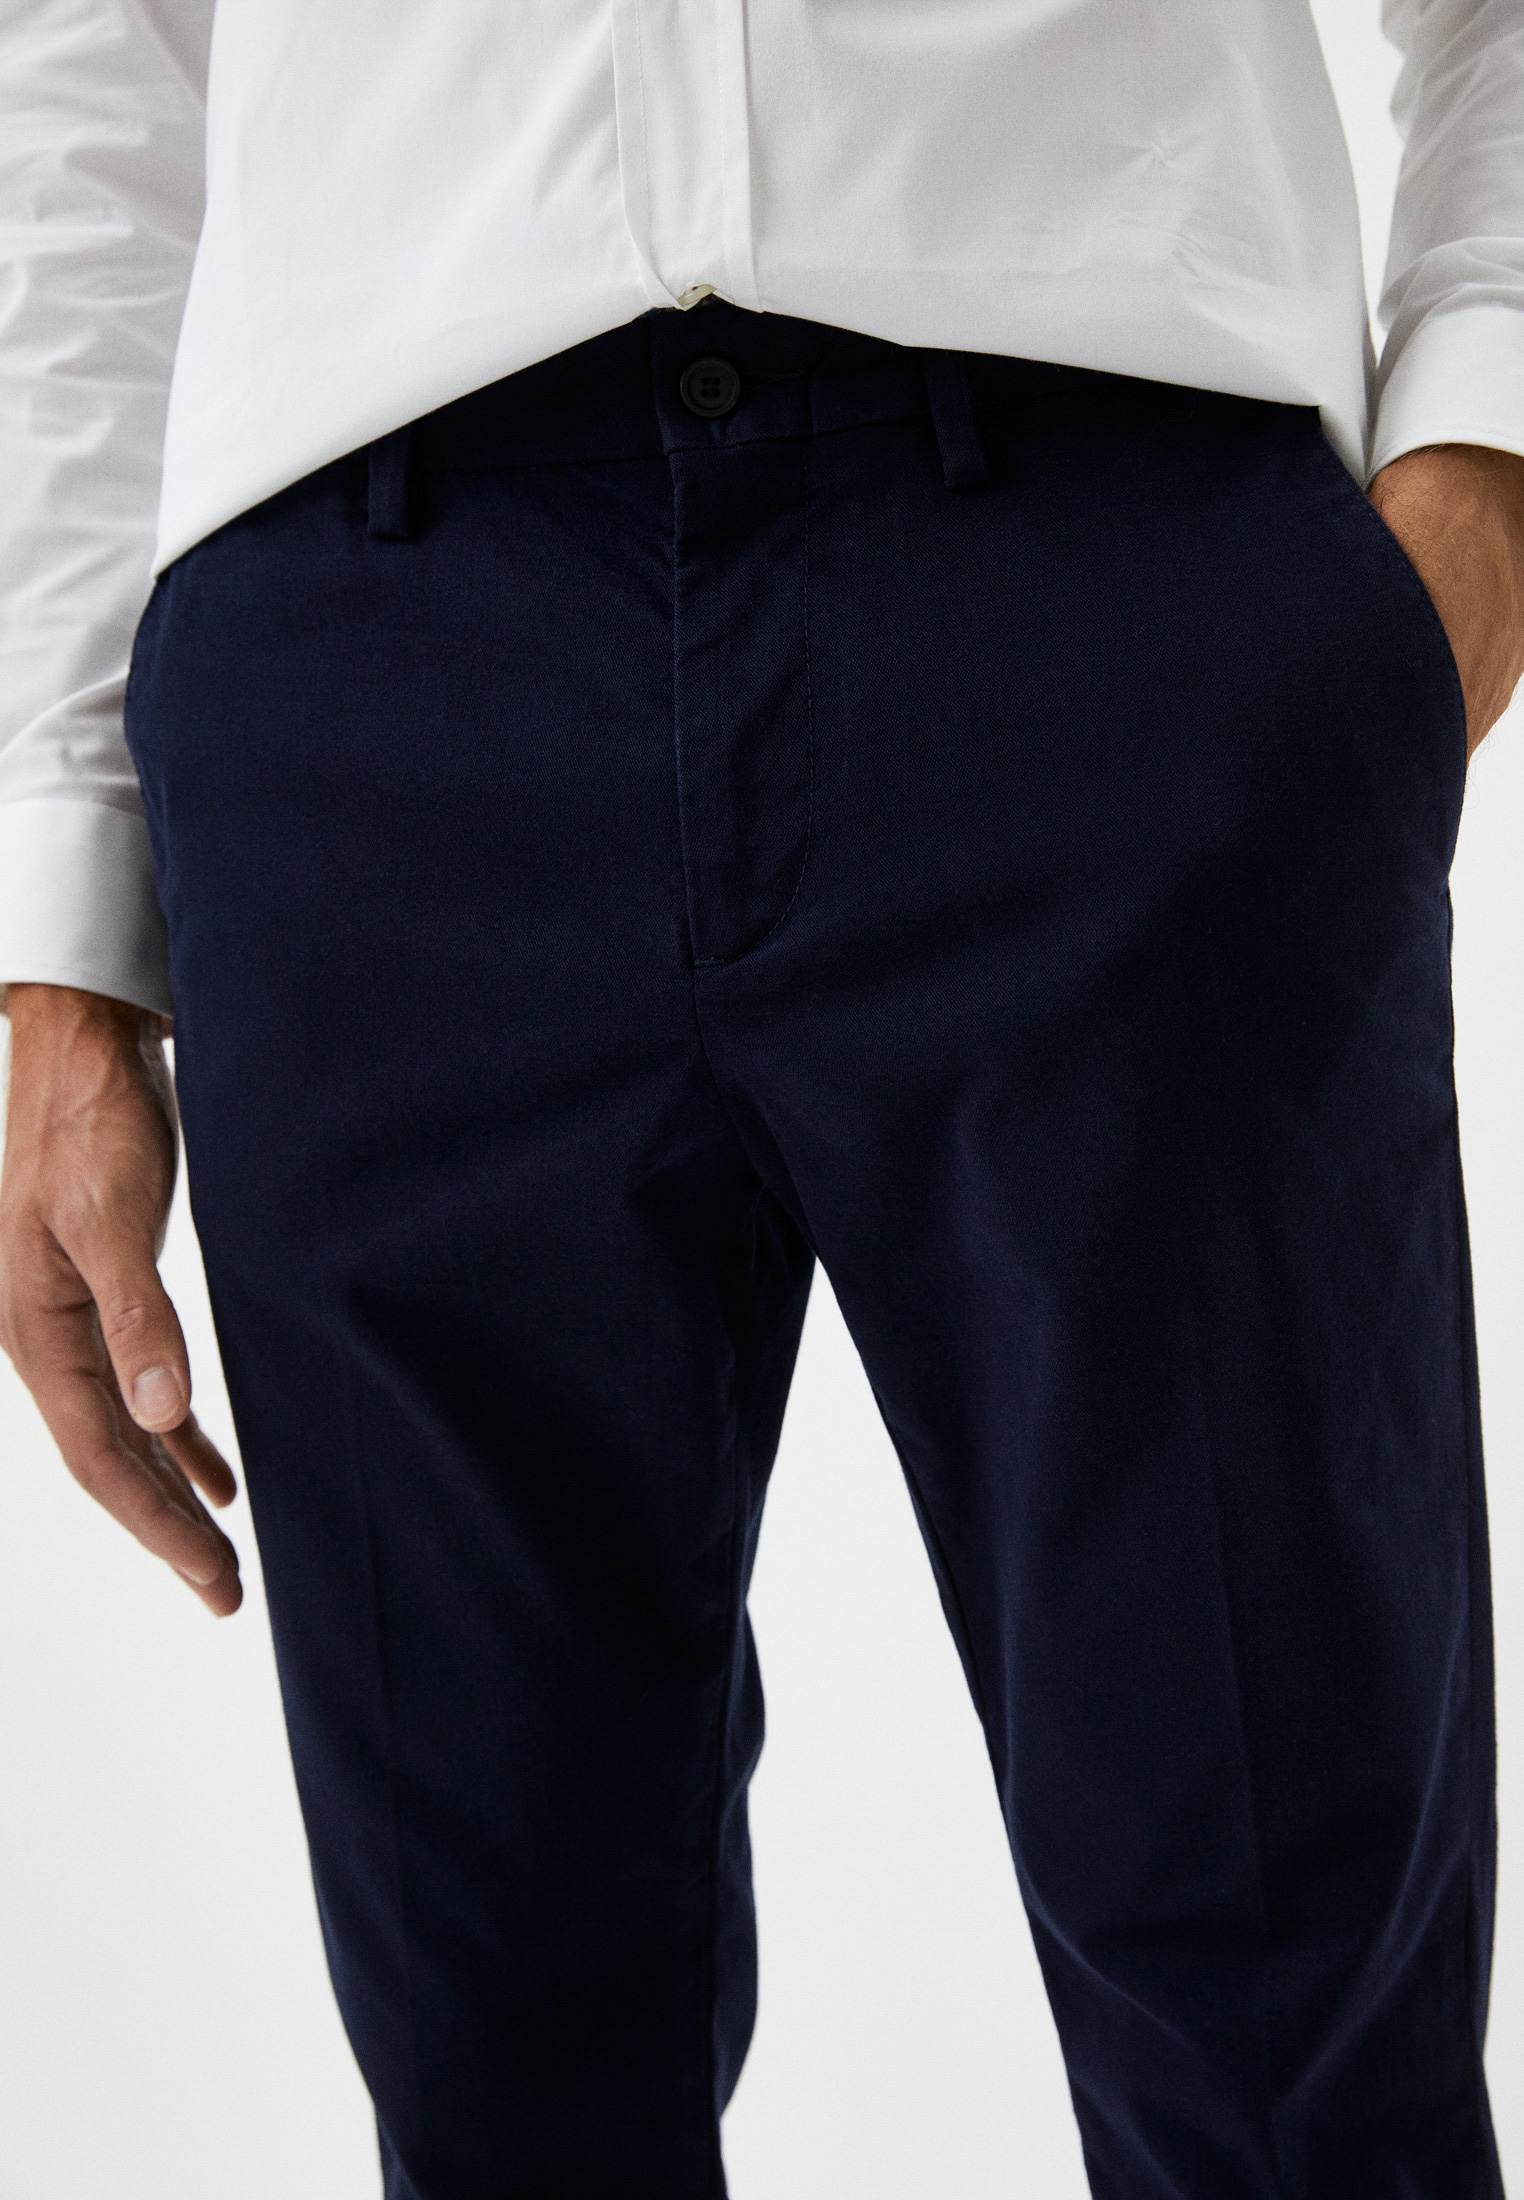 Мужские повседневные брюки Bikkembergs (Биккембергс) C P 001 00 S 3330: изображение 13